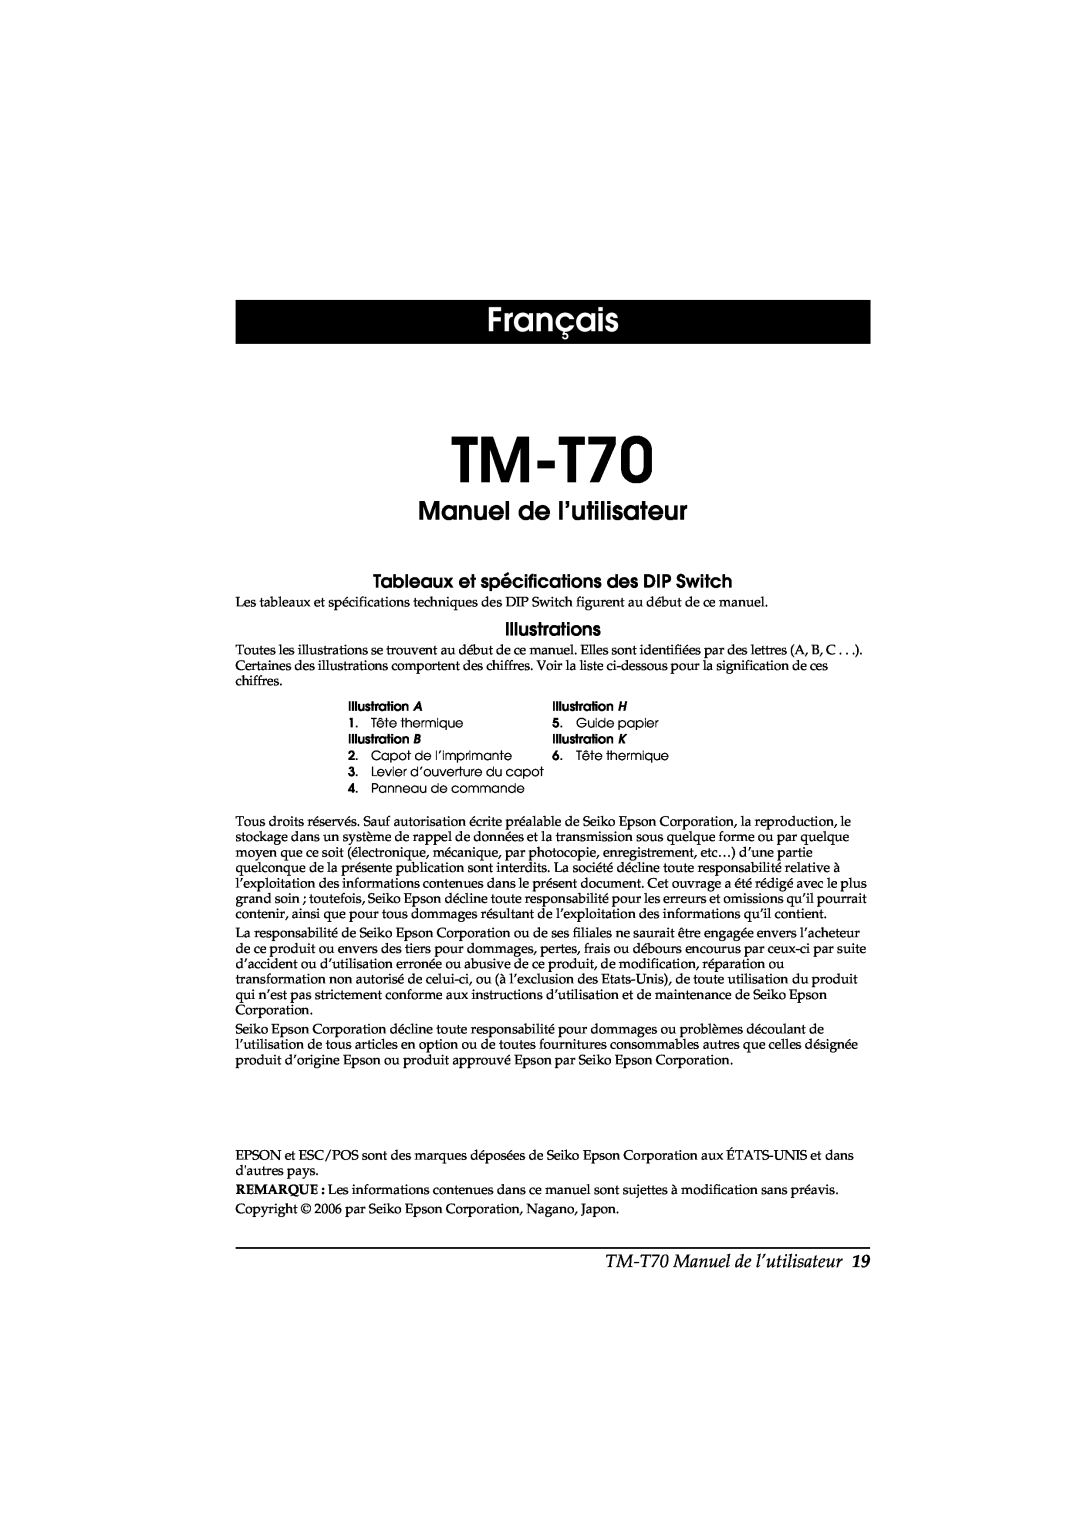 Seiko Group TM-T70 user manual Français, Manuel de l’utilisateur, Tableaux et spécifications des DIP Switch, Illustrations 